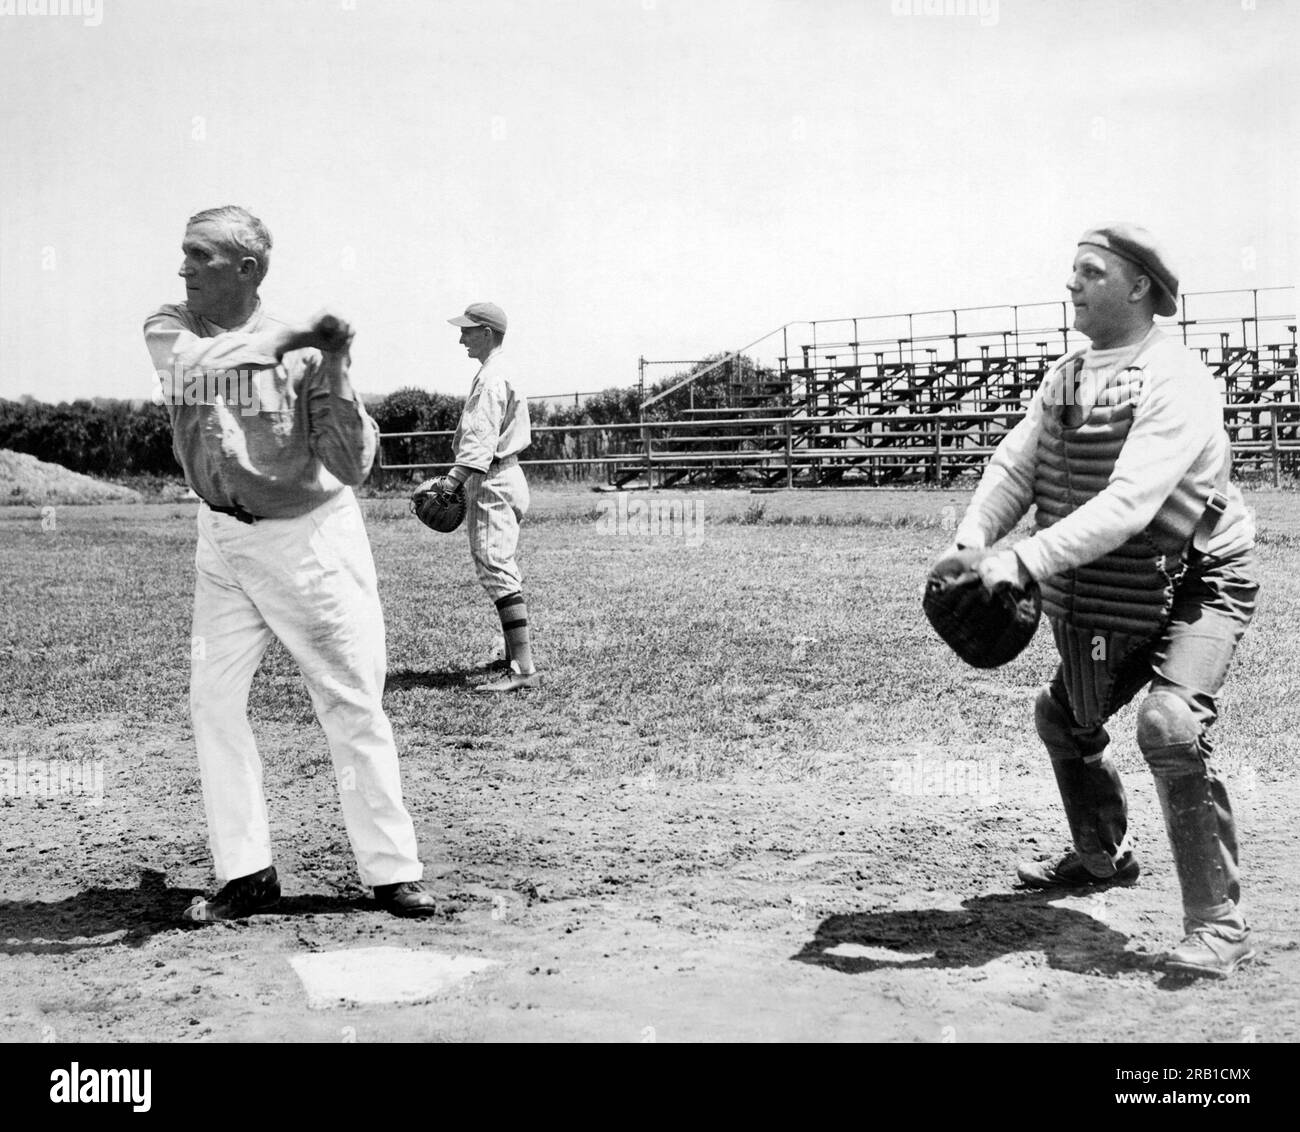 Washington, DC, 18 maggio 1932. I membri del Congresso repubblicani Lambertson del Kansas (battitore) e Withrow del Wisconsin (ricevitore) iniziano ad allenarsi per la loro annuale partita di baseball contro i loro fratelli democratici. Foto Stock